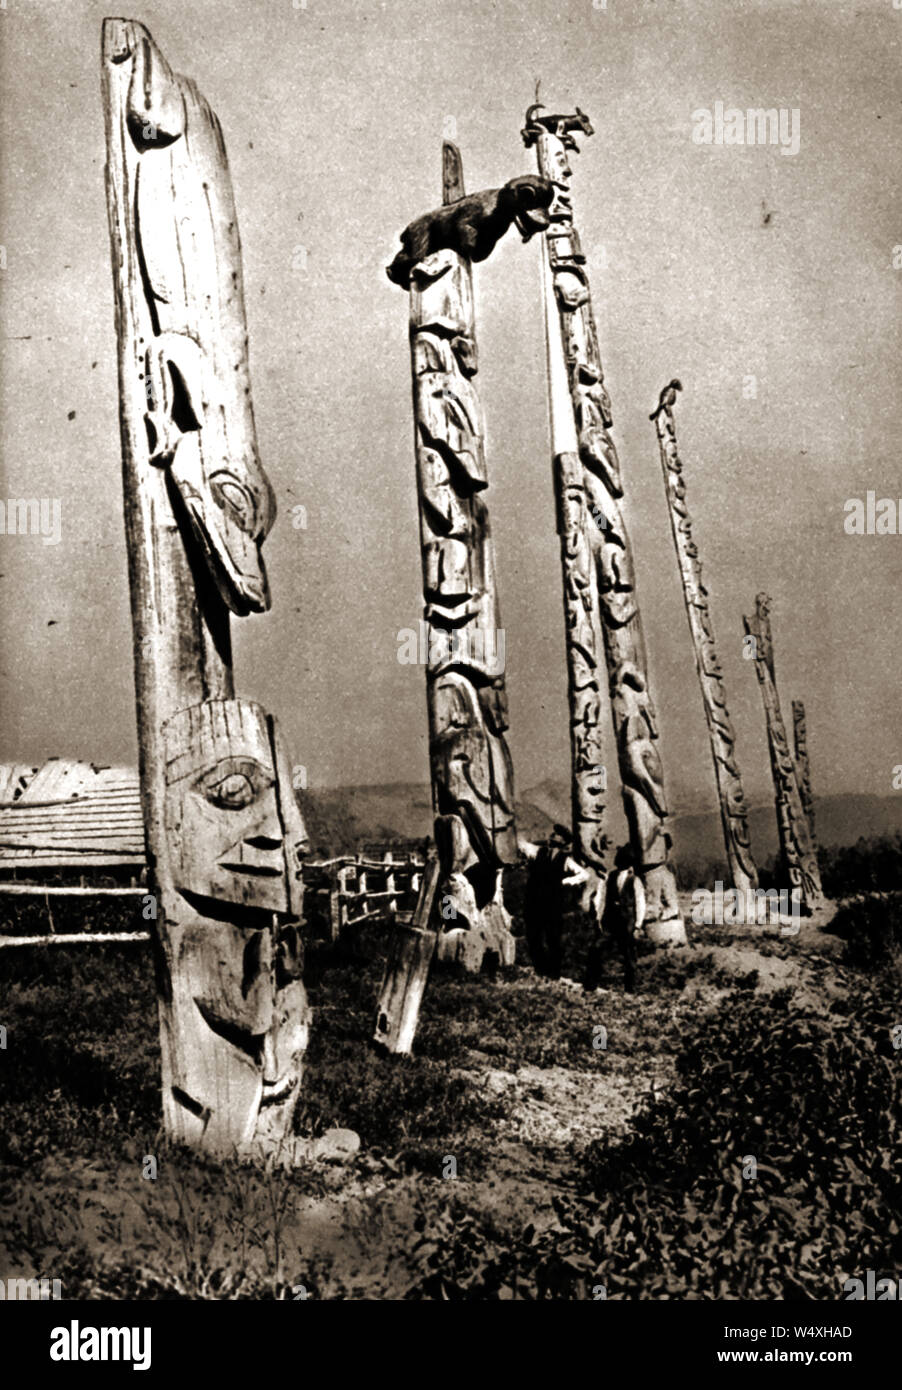 Circa 1940 - US-Native Indianer geschnitzten Familie (Haus) Totem Pole (Standort unbekannt) - Größe kann durch die zwei menschliche Figuren stehen unter einem geschätzt werden. Stockfoto